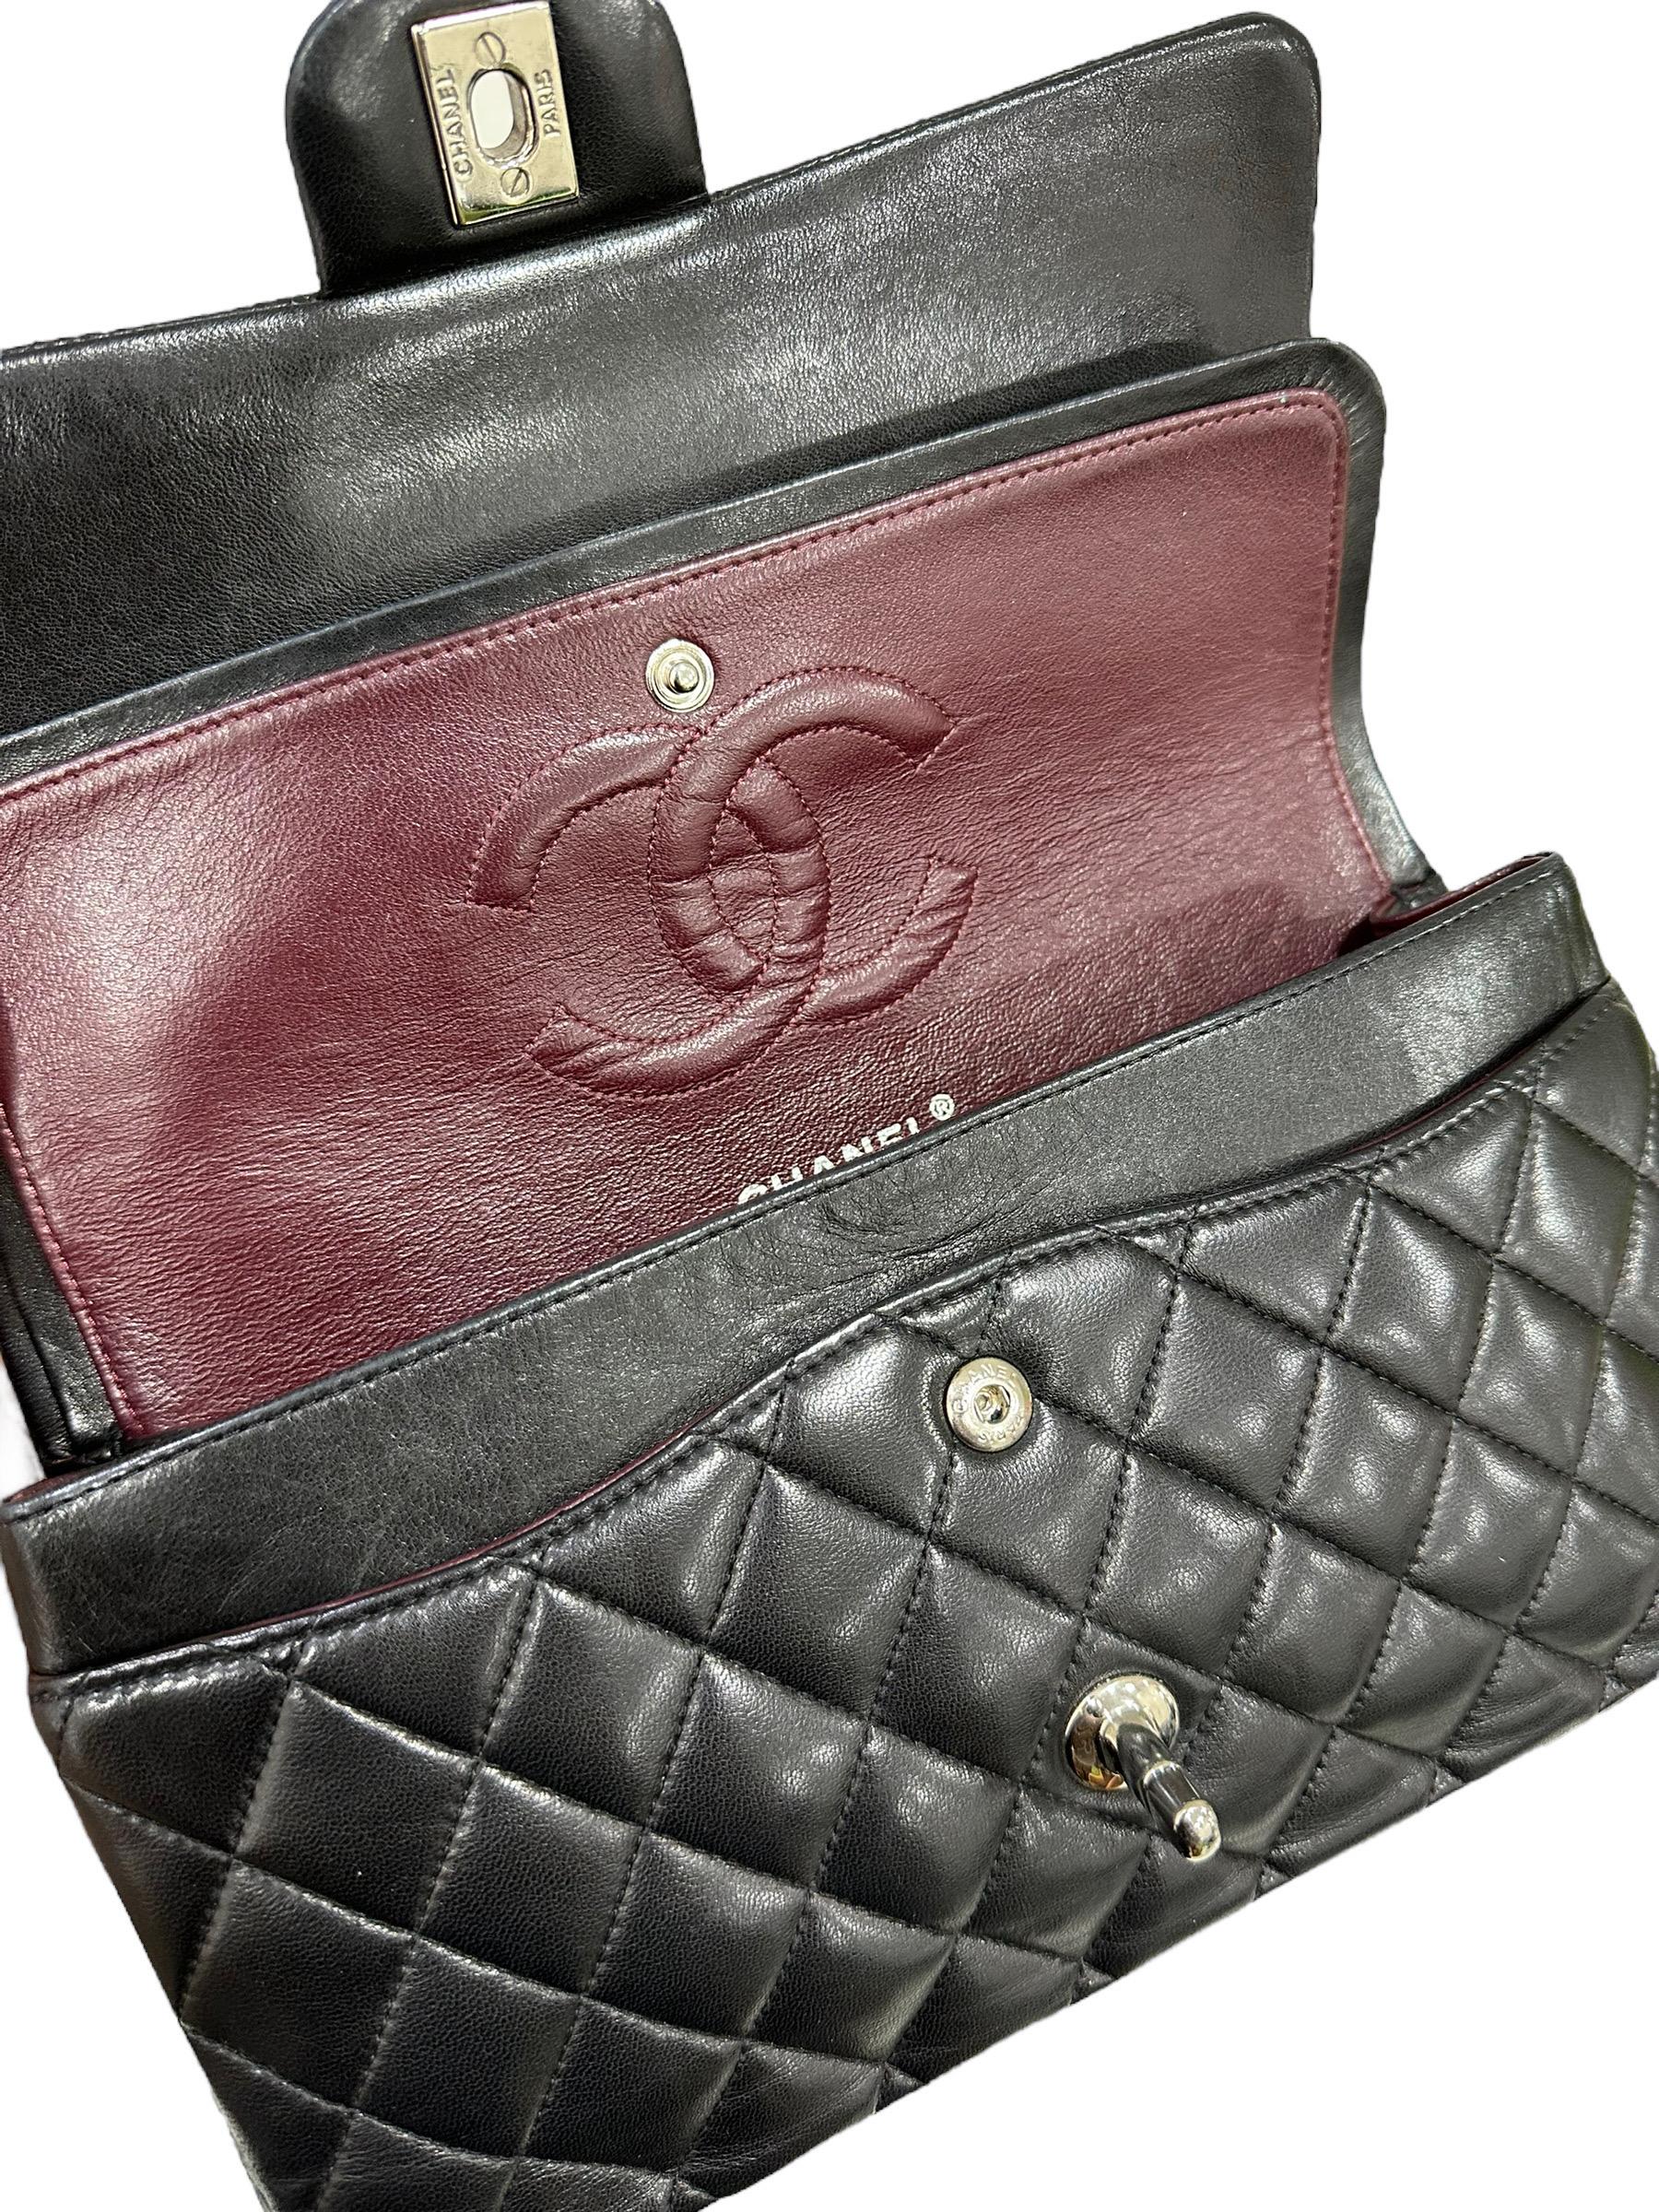 2008 Chanel. 2.55 Timeless Black Leather Shoulder Bag 12